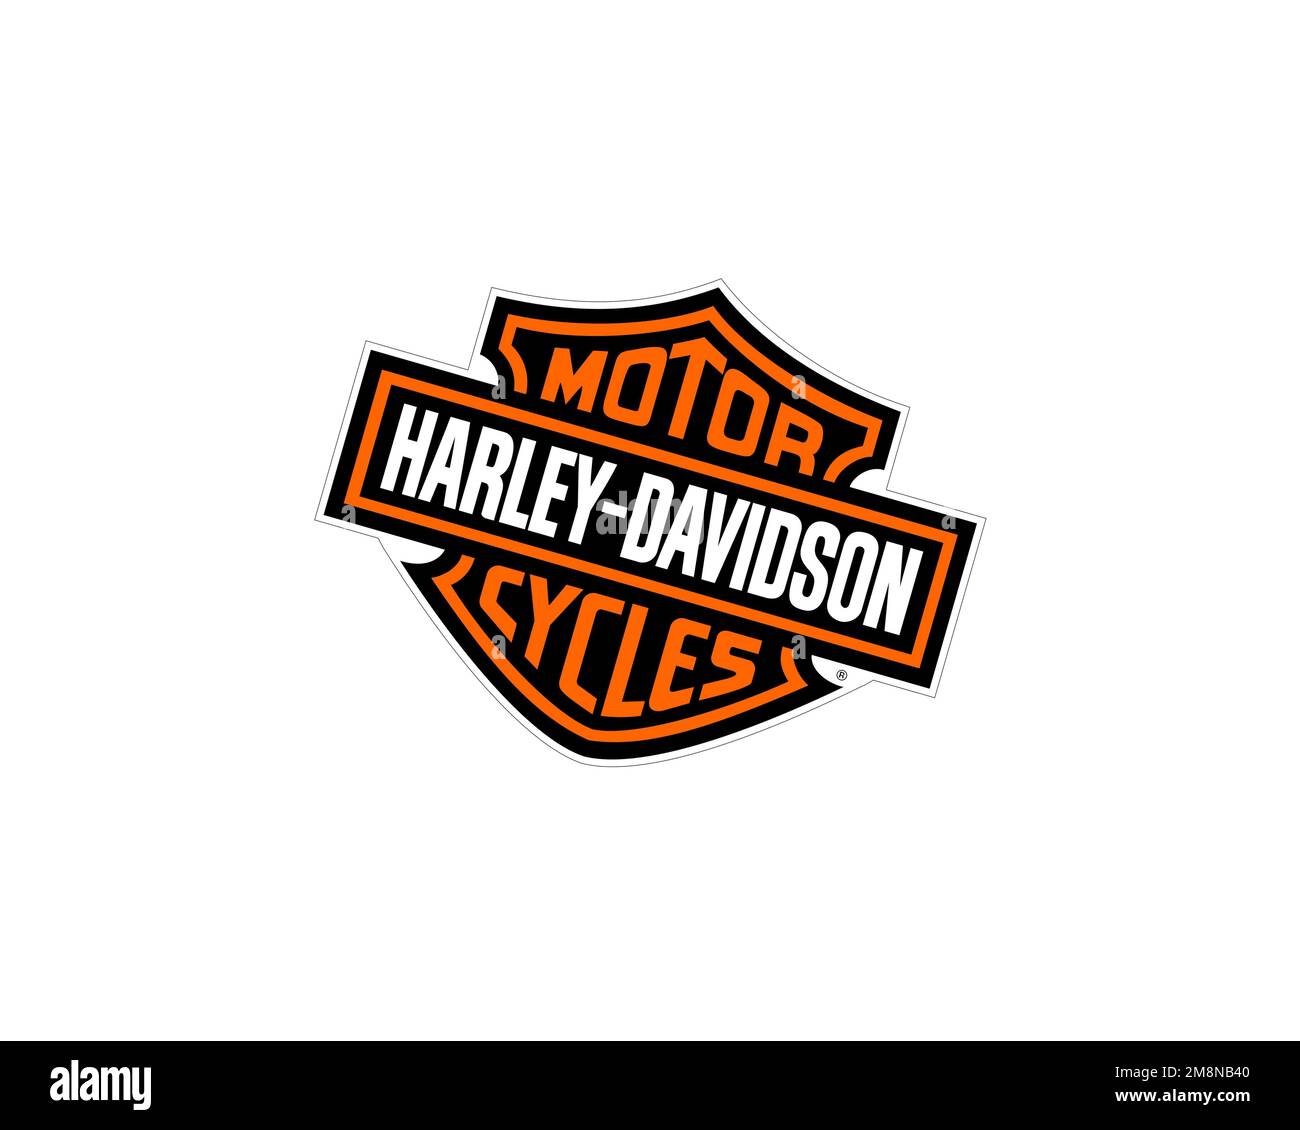 Xe máy Harley Davidson là biểu tượng của sự mạnh mẽ và phong cách cổ điển. Hãy khám phá logo đẹp mắt này để hiểu thêm về thương hiệu xe hơi danh tiếng này!